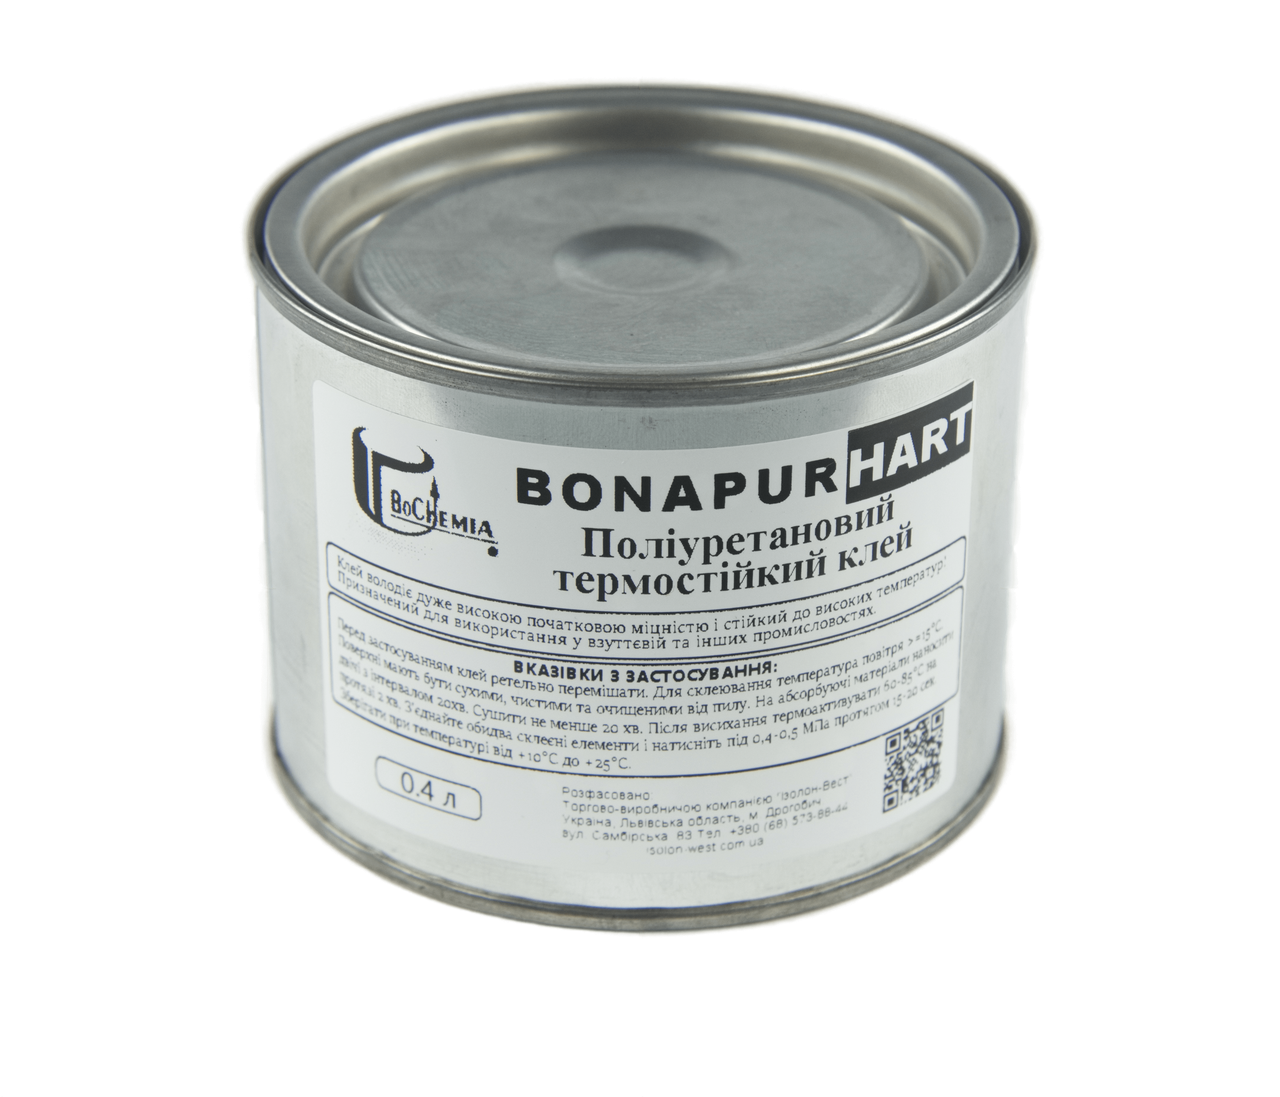 Поліуретановий термостійкий клей BONAPUR HART для шкірозамінника, тканин, пвх, синтетичної шкіри детальна фотка